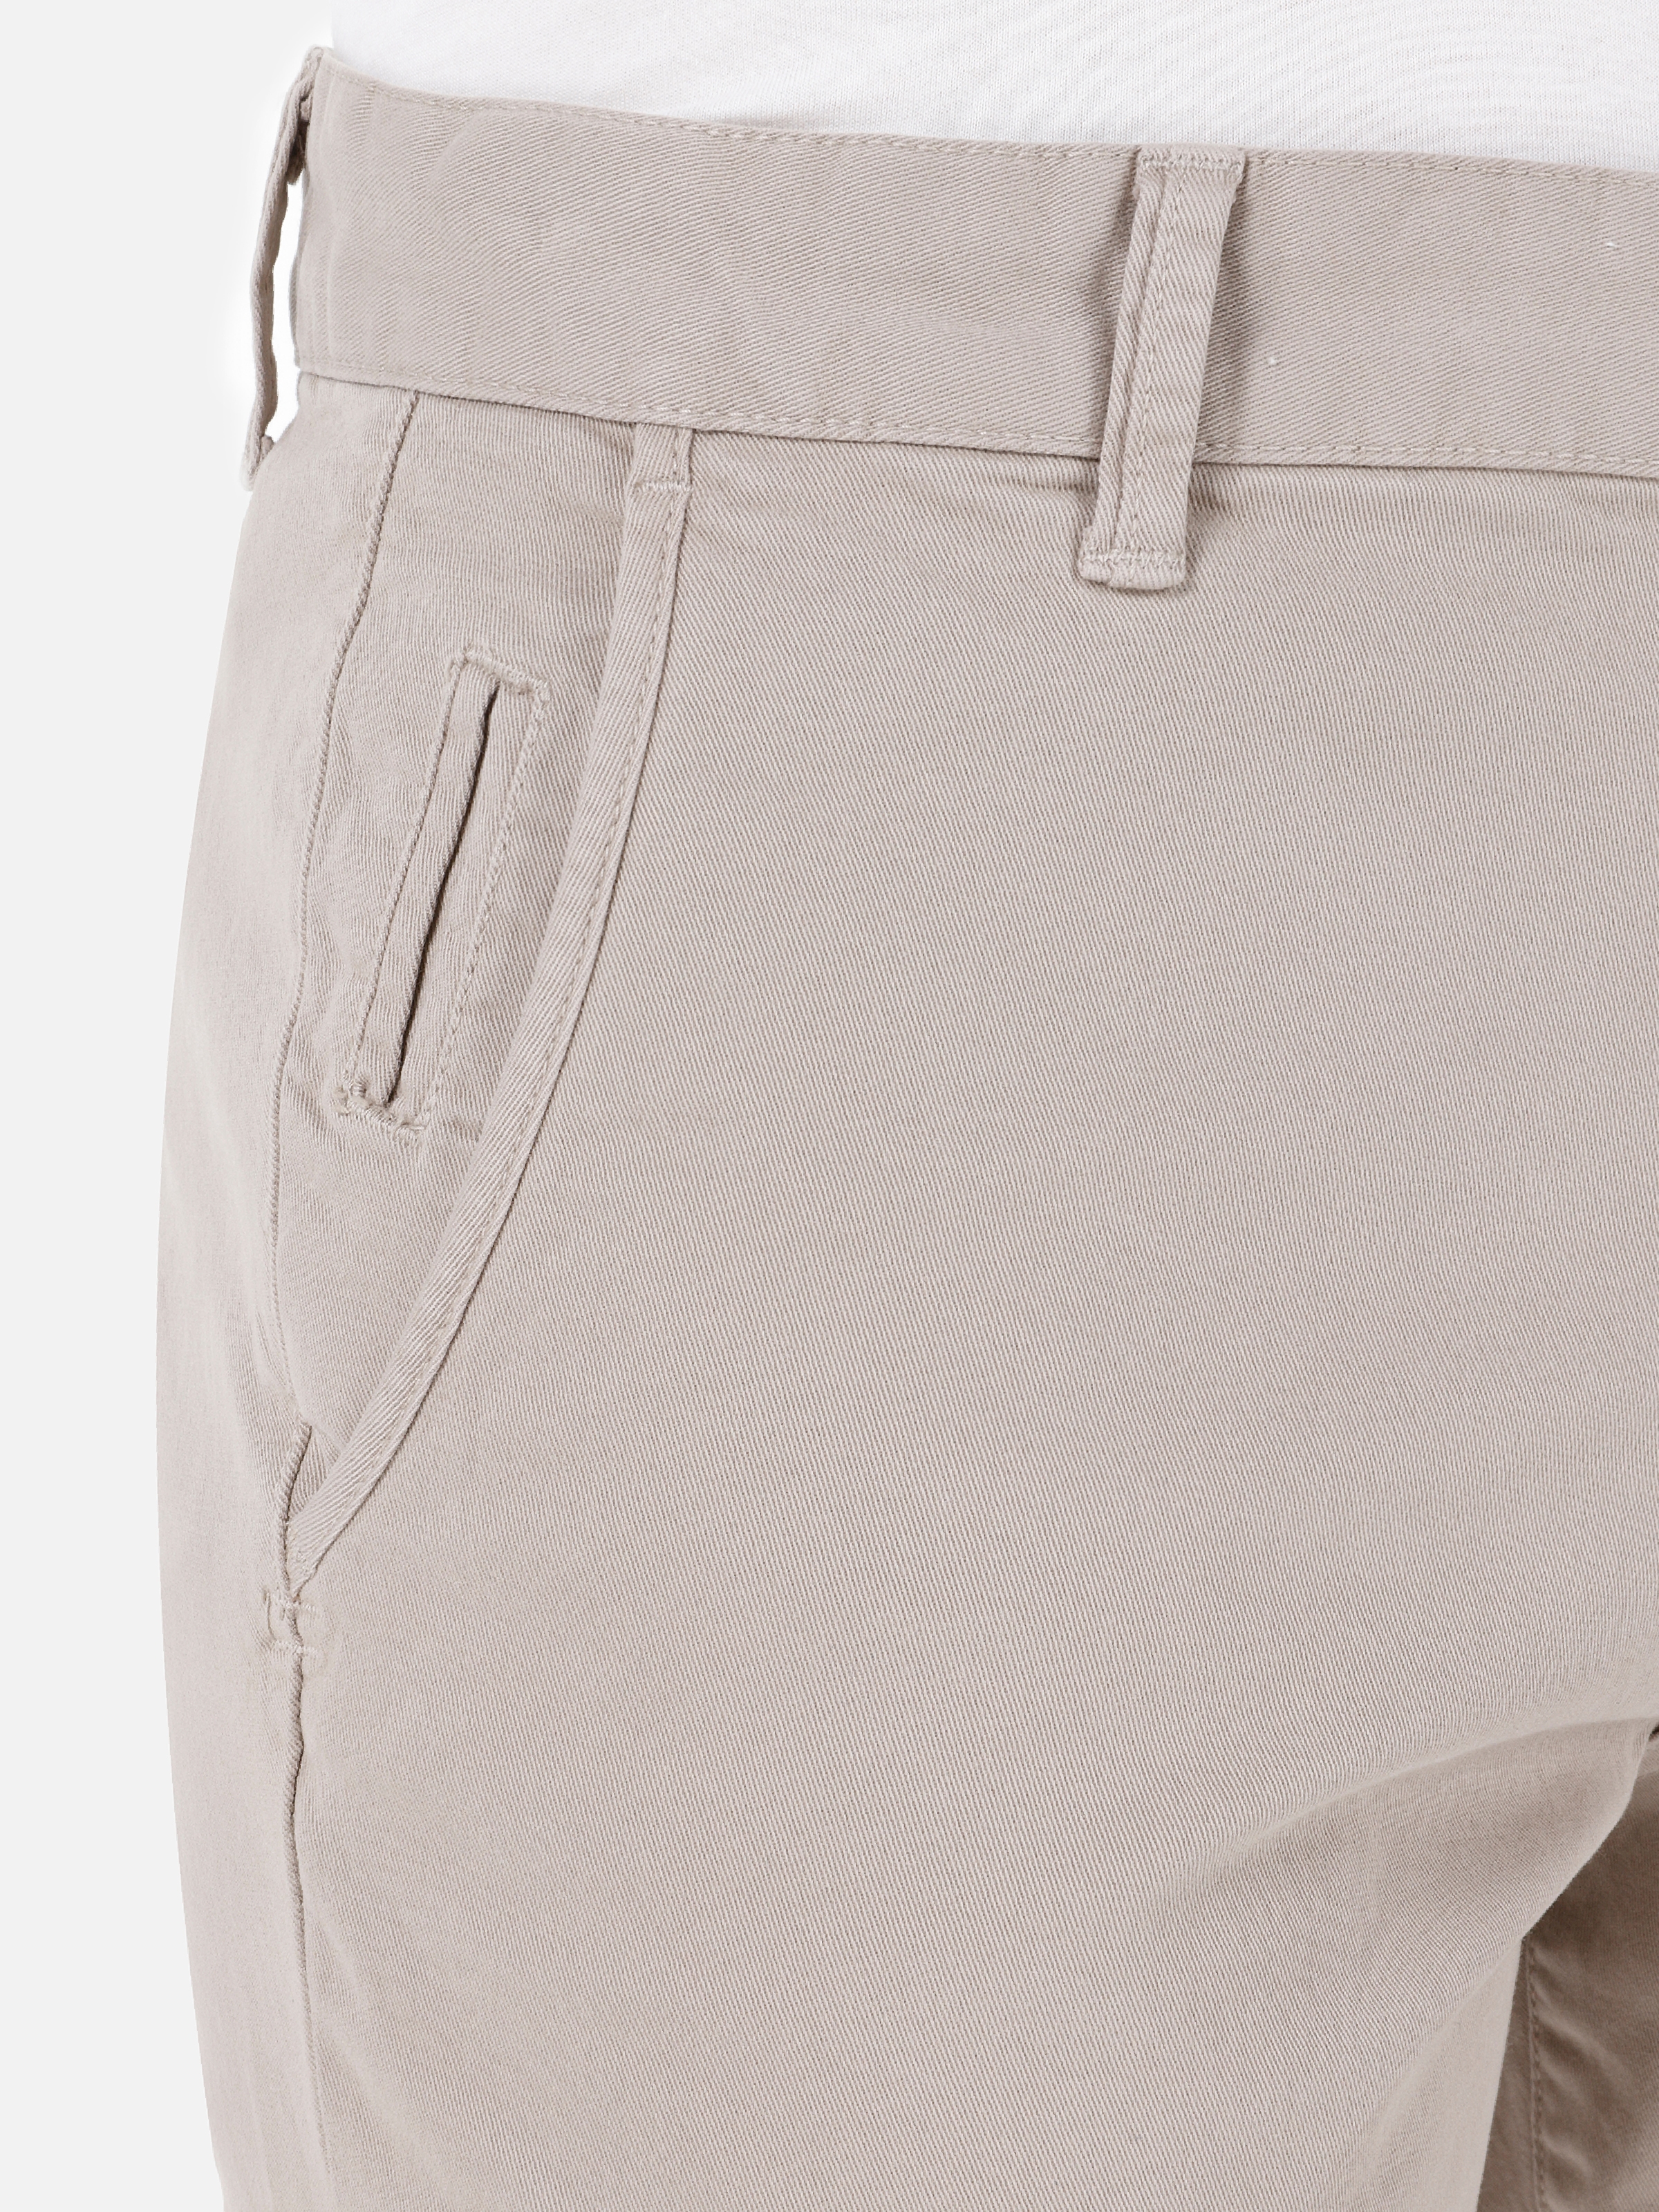 Afficher les détails de Pantalon Beige Pour Homme, Coupe Slim, Taille Moyenne, Jambe Droite